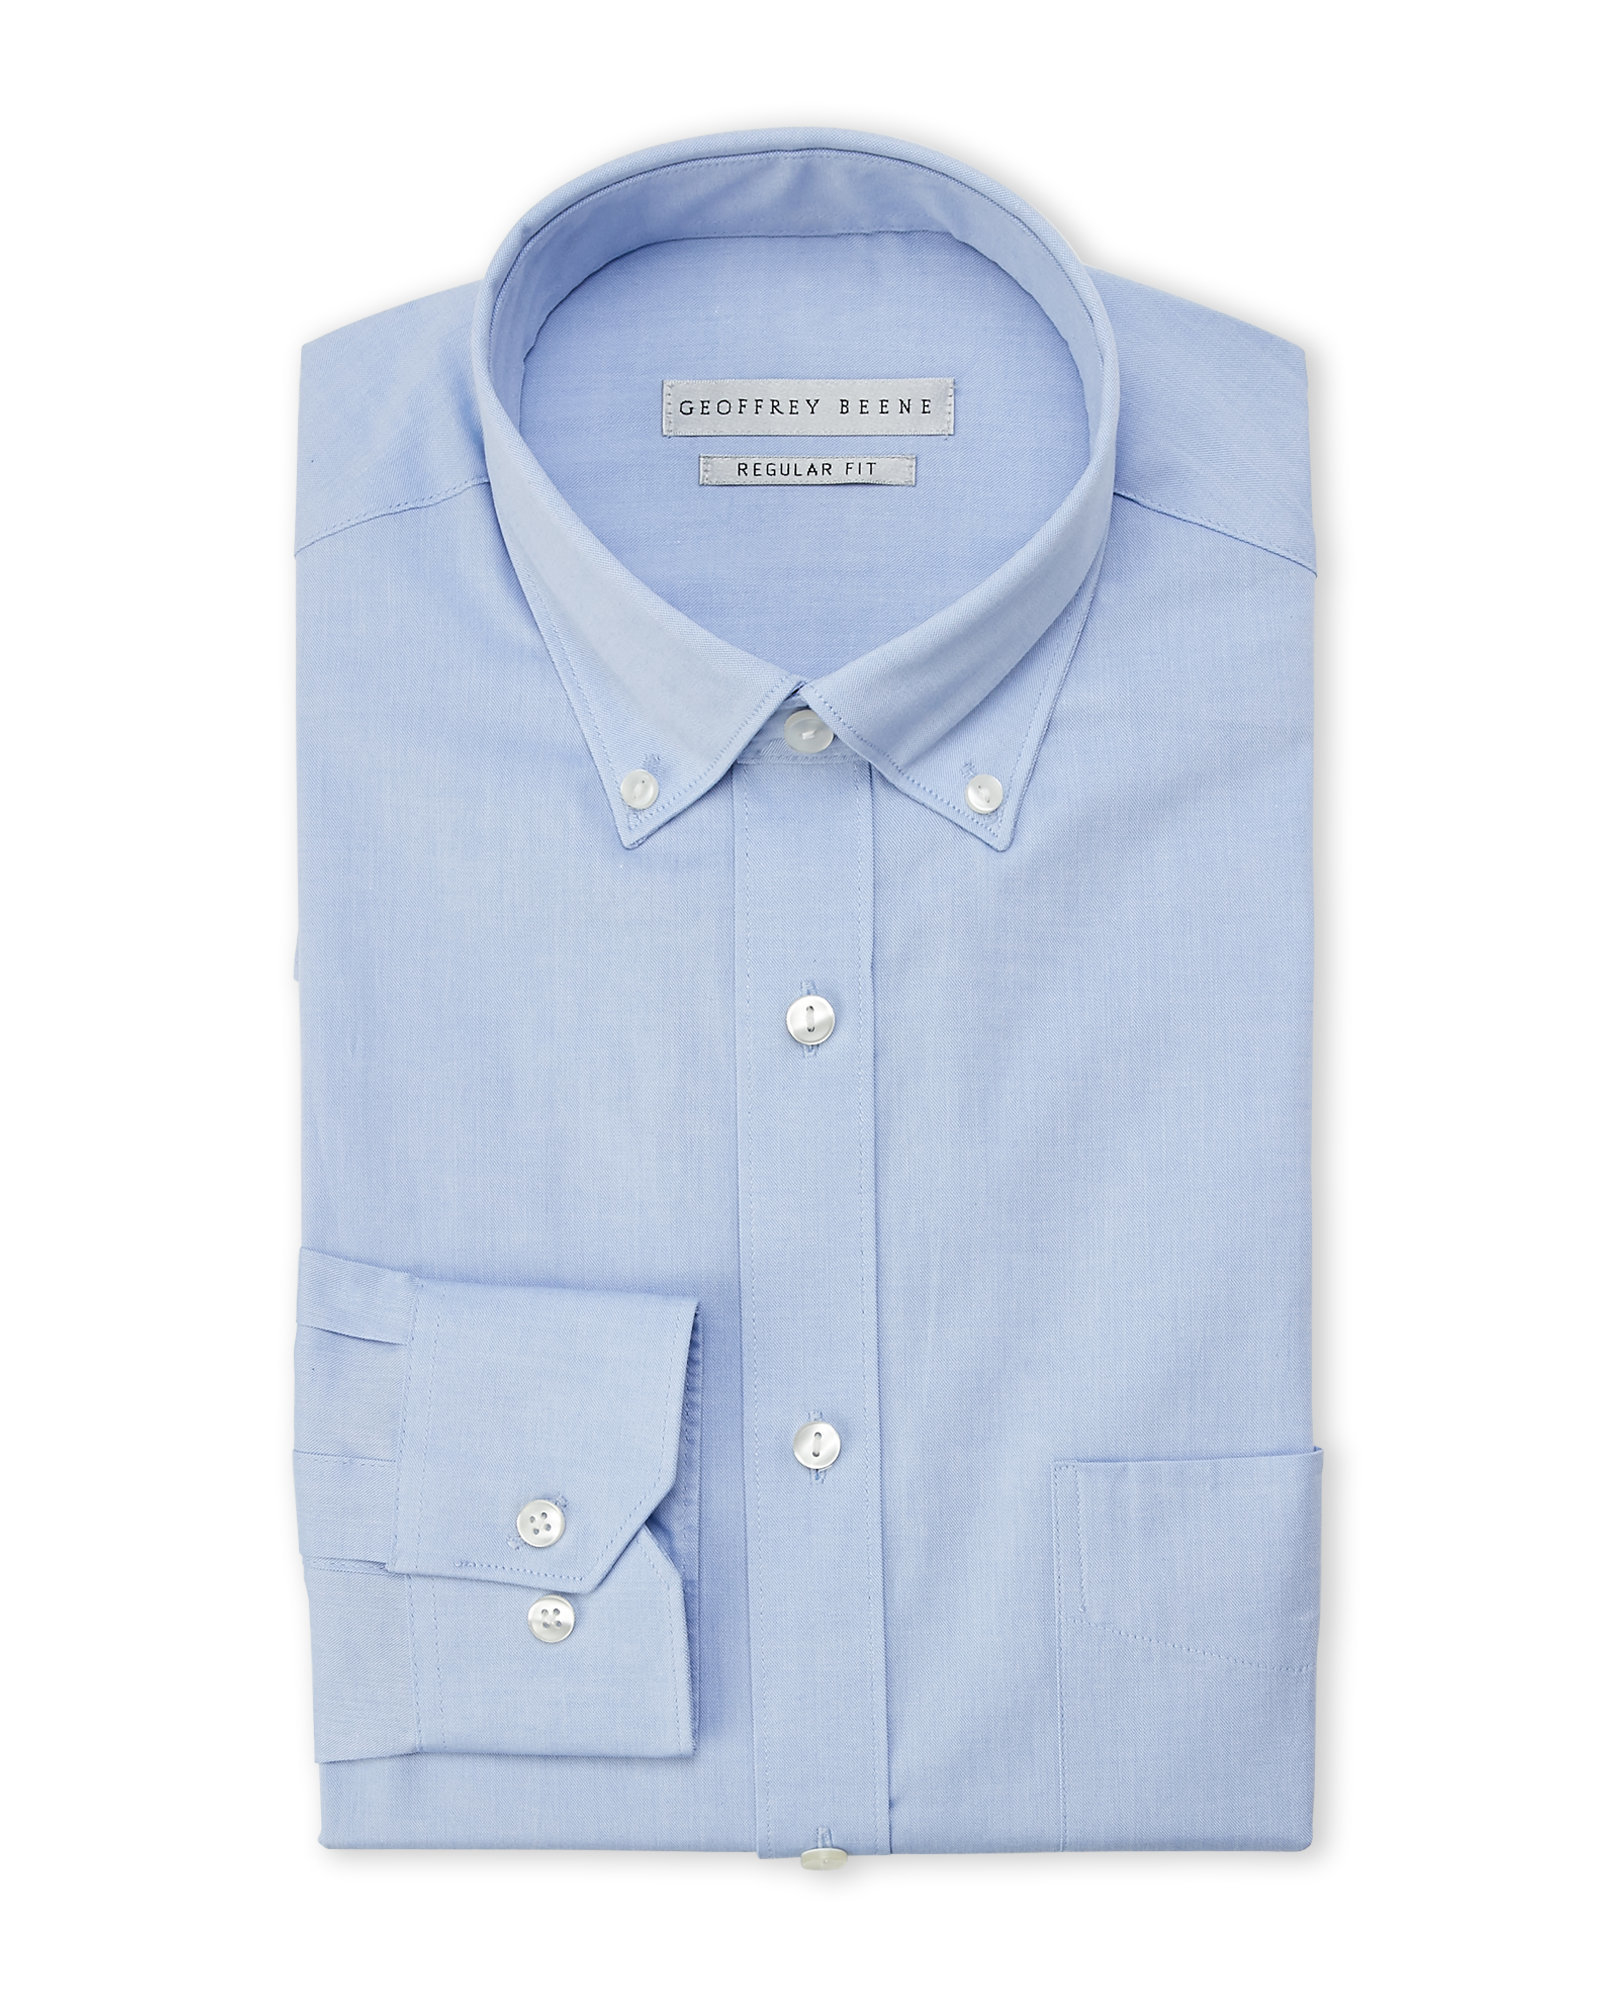 Lyst - Geoffrey Beene Blue Wrinkle-Free Regular Fit Dress Shirt in Blue ...